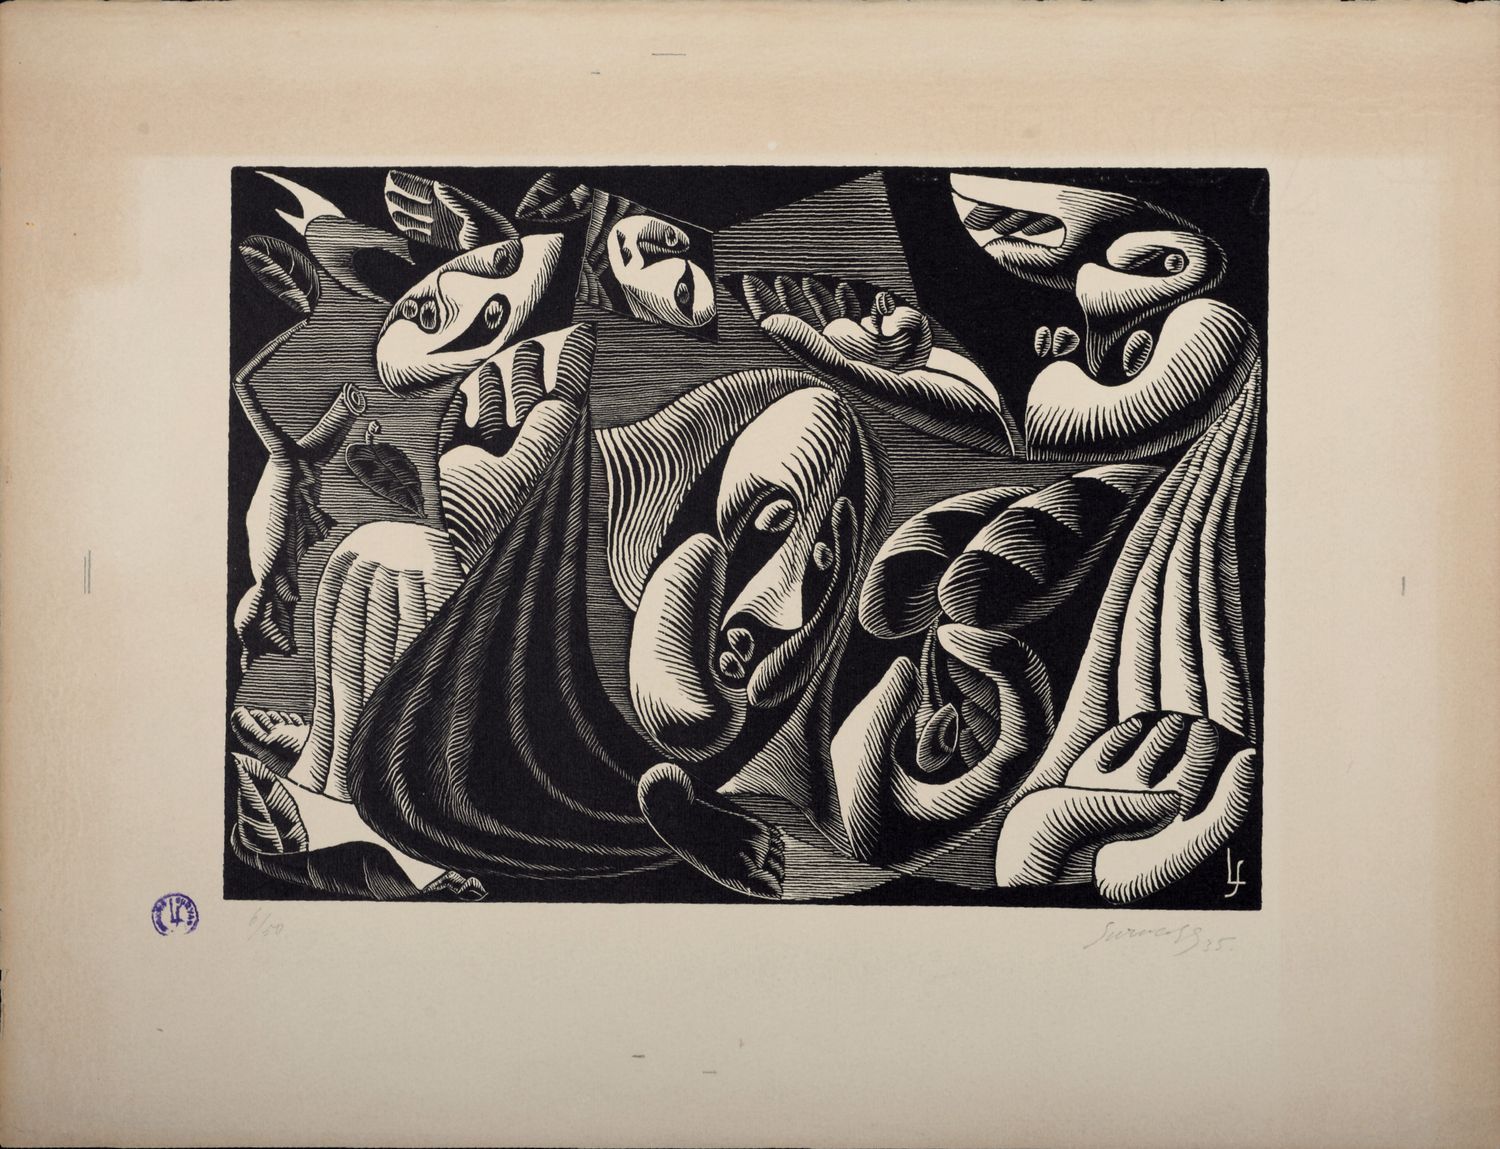 Léopold SURVAGE Leopold Survage (1879-1968)

Composición surrealista XXII, 1935
&hellip;